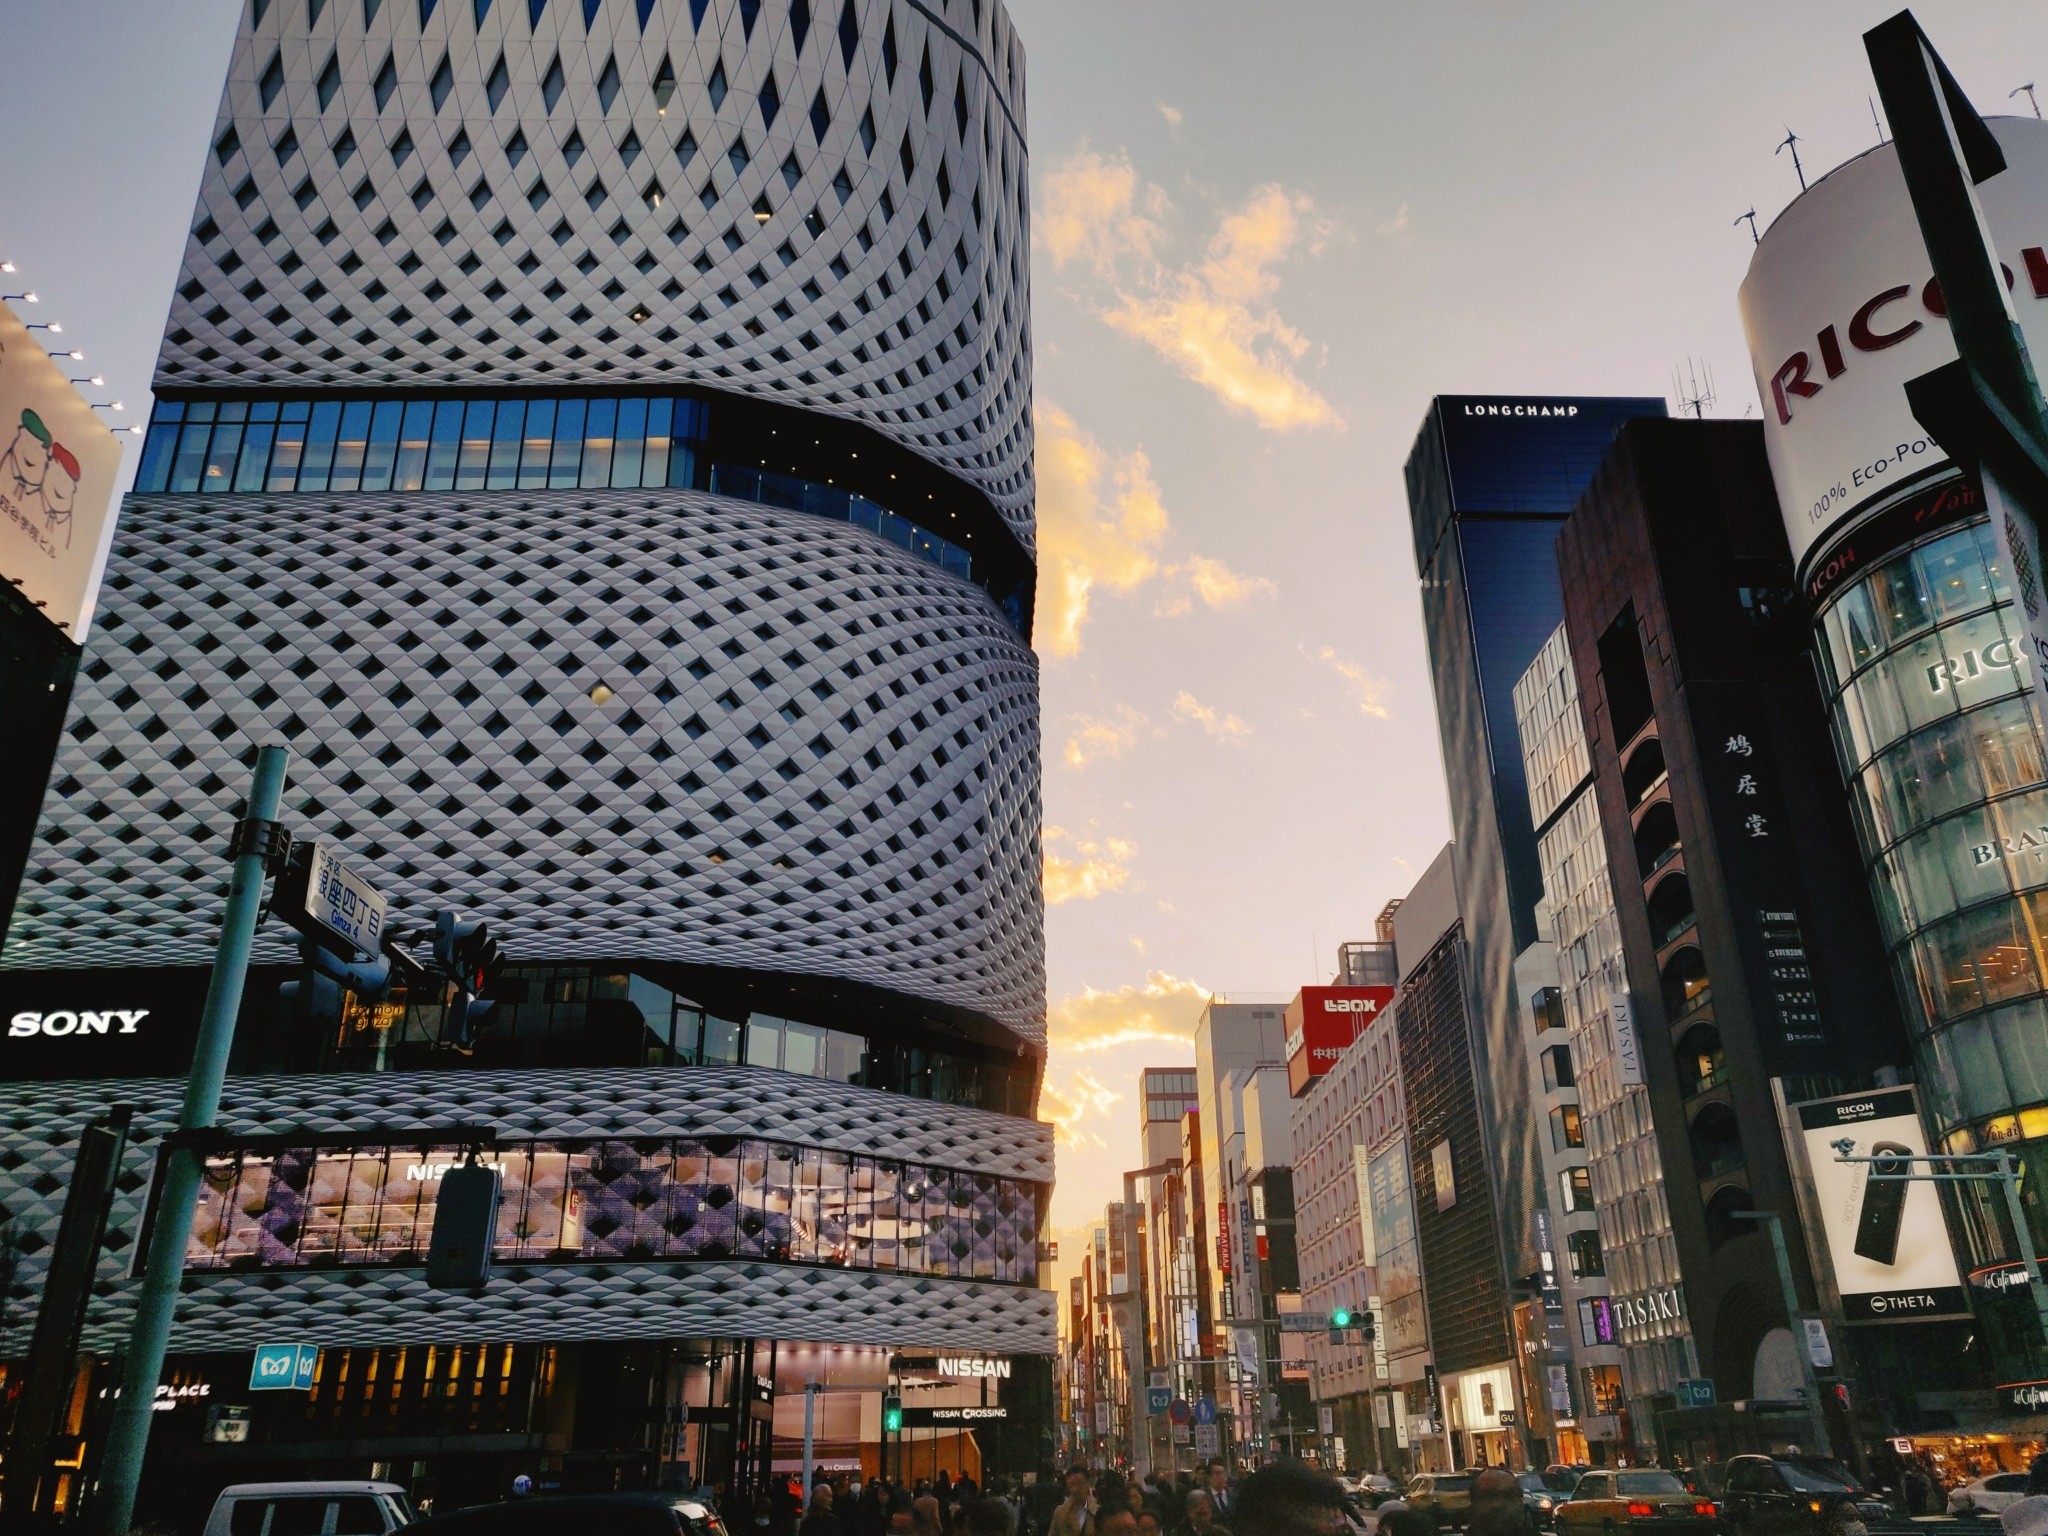 Γκίνζα: Η απόλυτη συνοικία των luxury brands με τα καταστήματα-μνημεία βρίσκεται στο Τόκιο